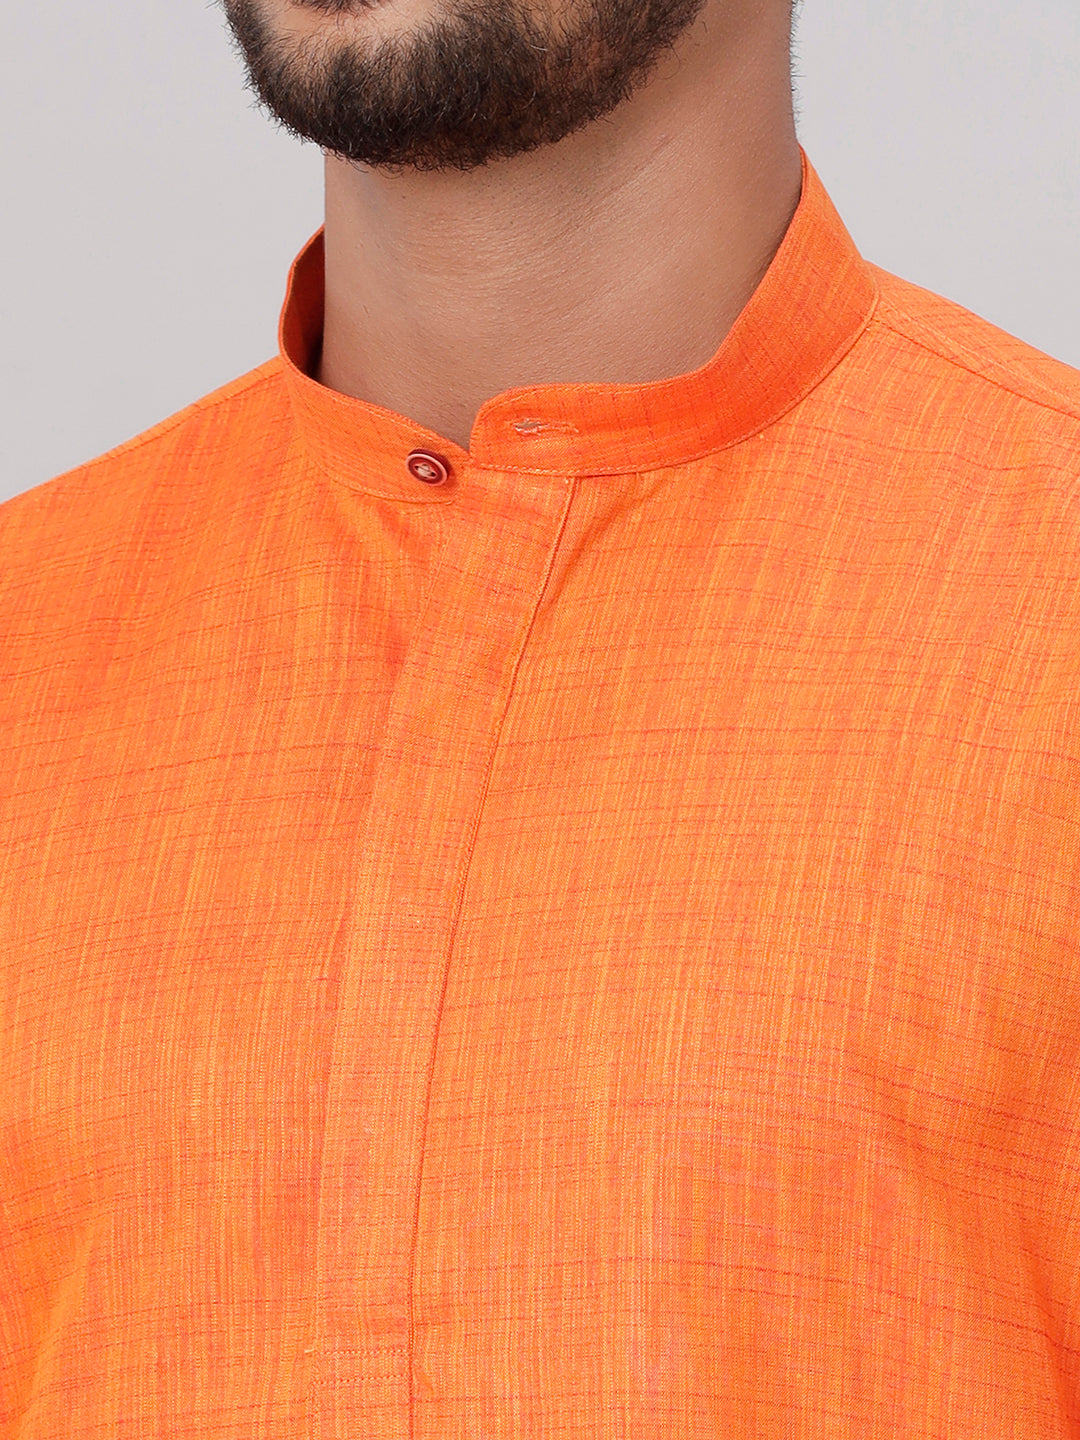 Mens Medium Length Orange Kurta with White Panchakacham Combo FS3-Zoom view